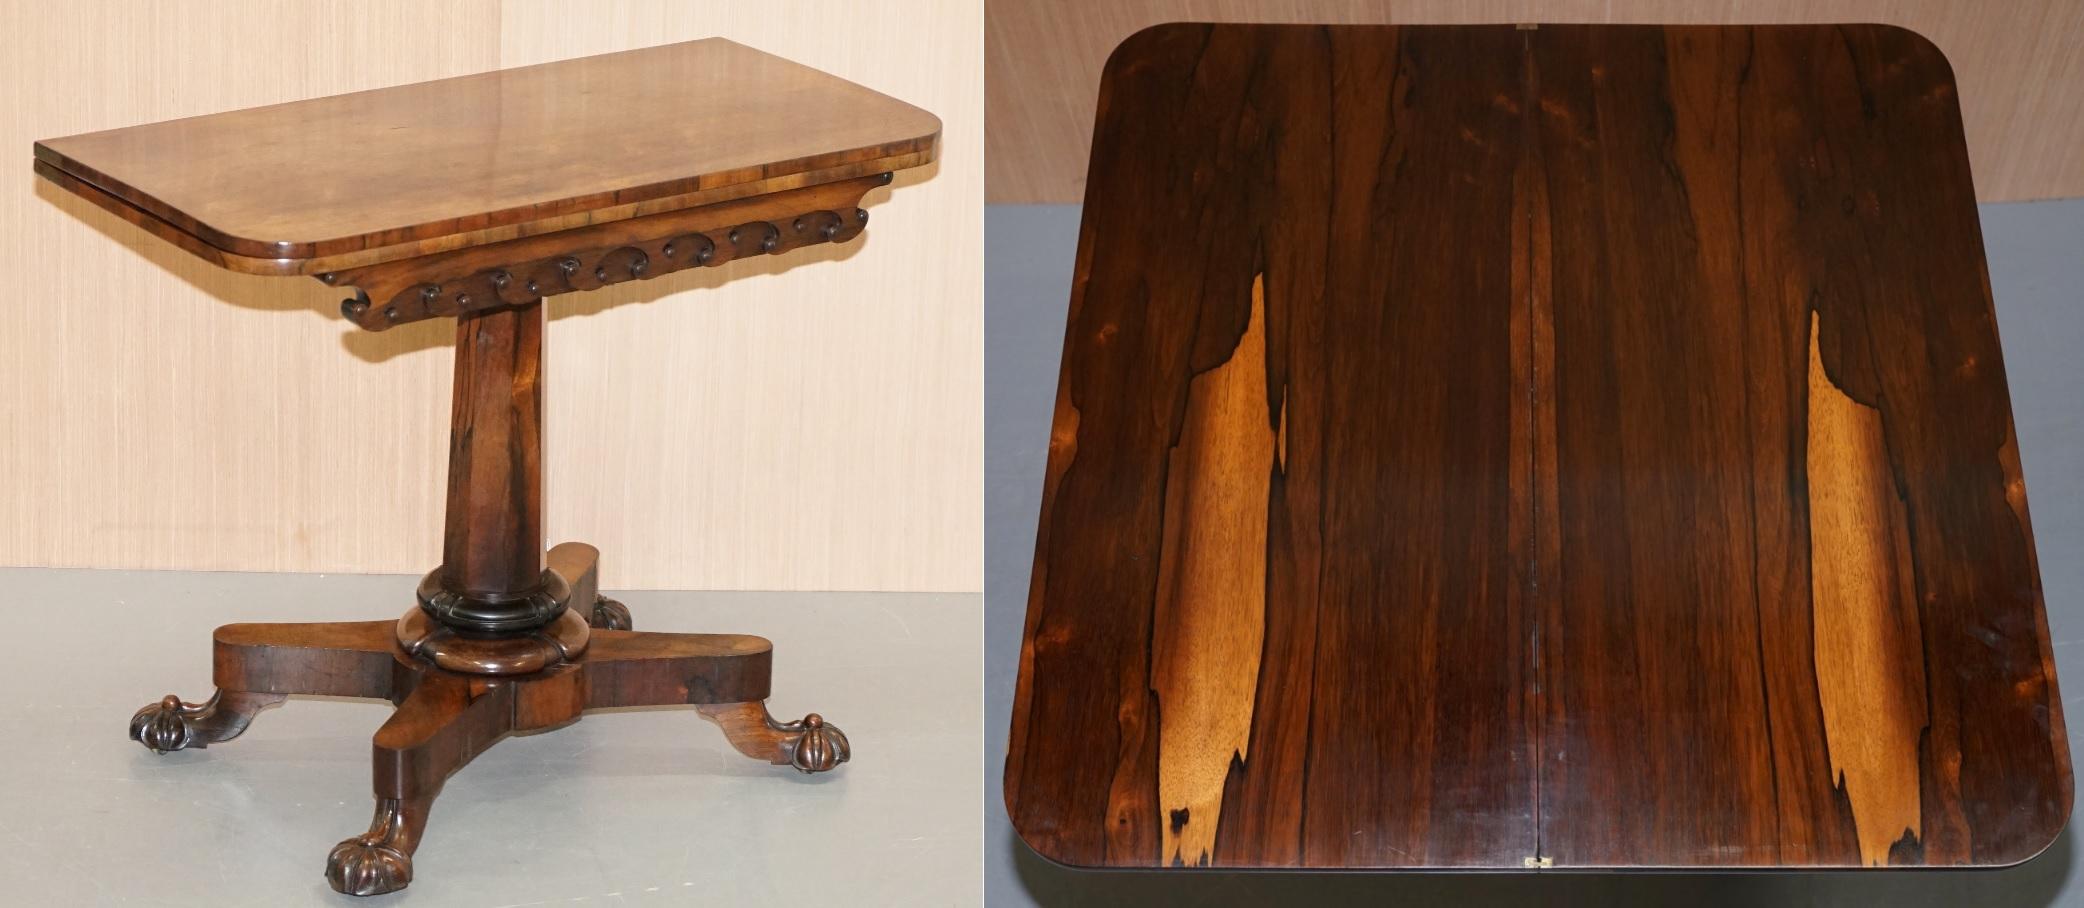 Nous sommes ravis d'offrir à la vente cette superbe et très rare table à jeux ou à thé en palissandre de J Kendell & Co, datant de 1830.

Une pièce rare et exquise, hautement collectionnable, la patine du bois de rose est absolument sublime, je